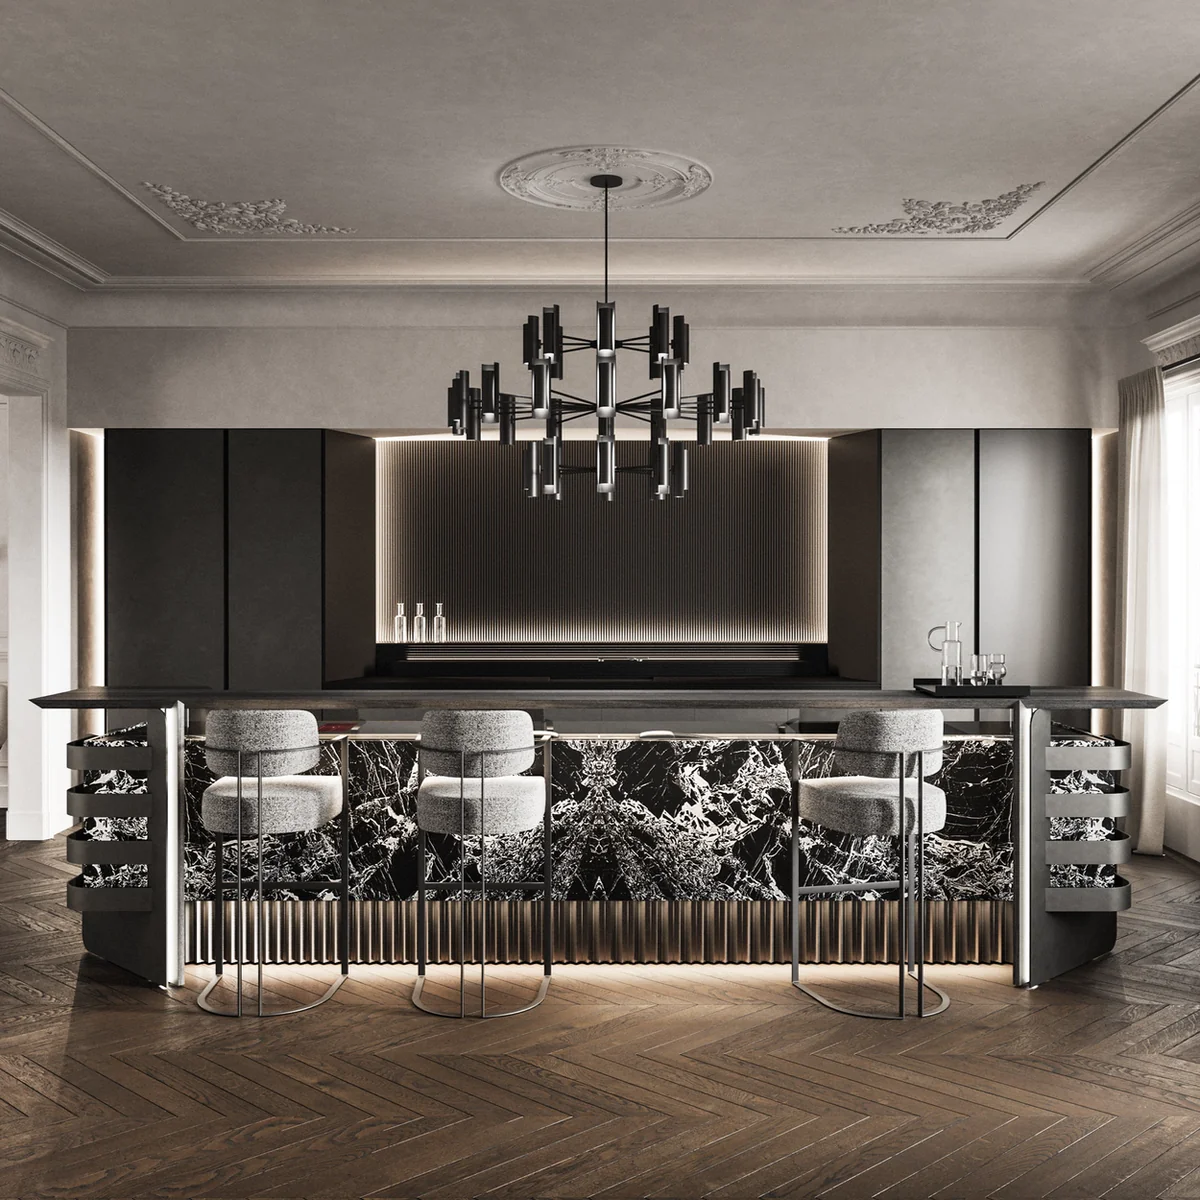 Karl Lagerfeld kitchen designs.